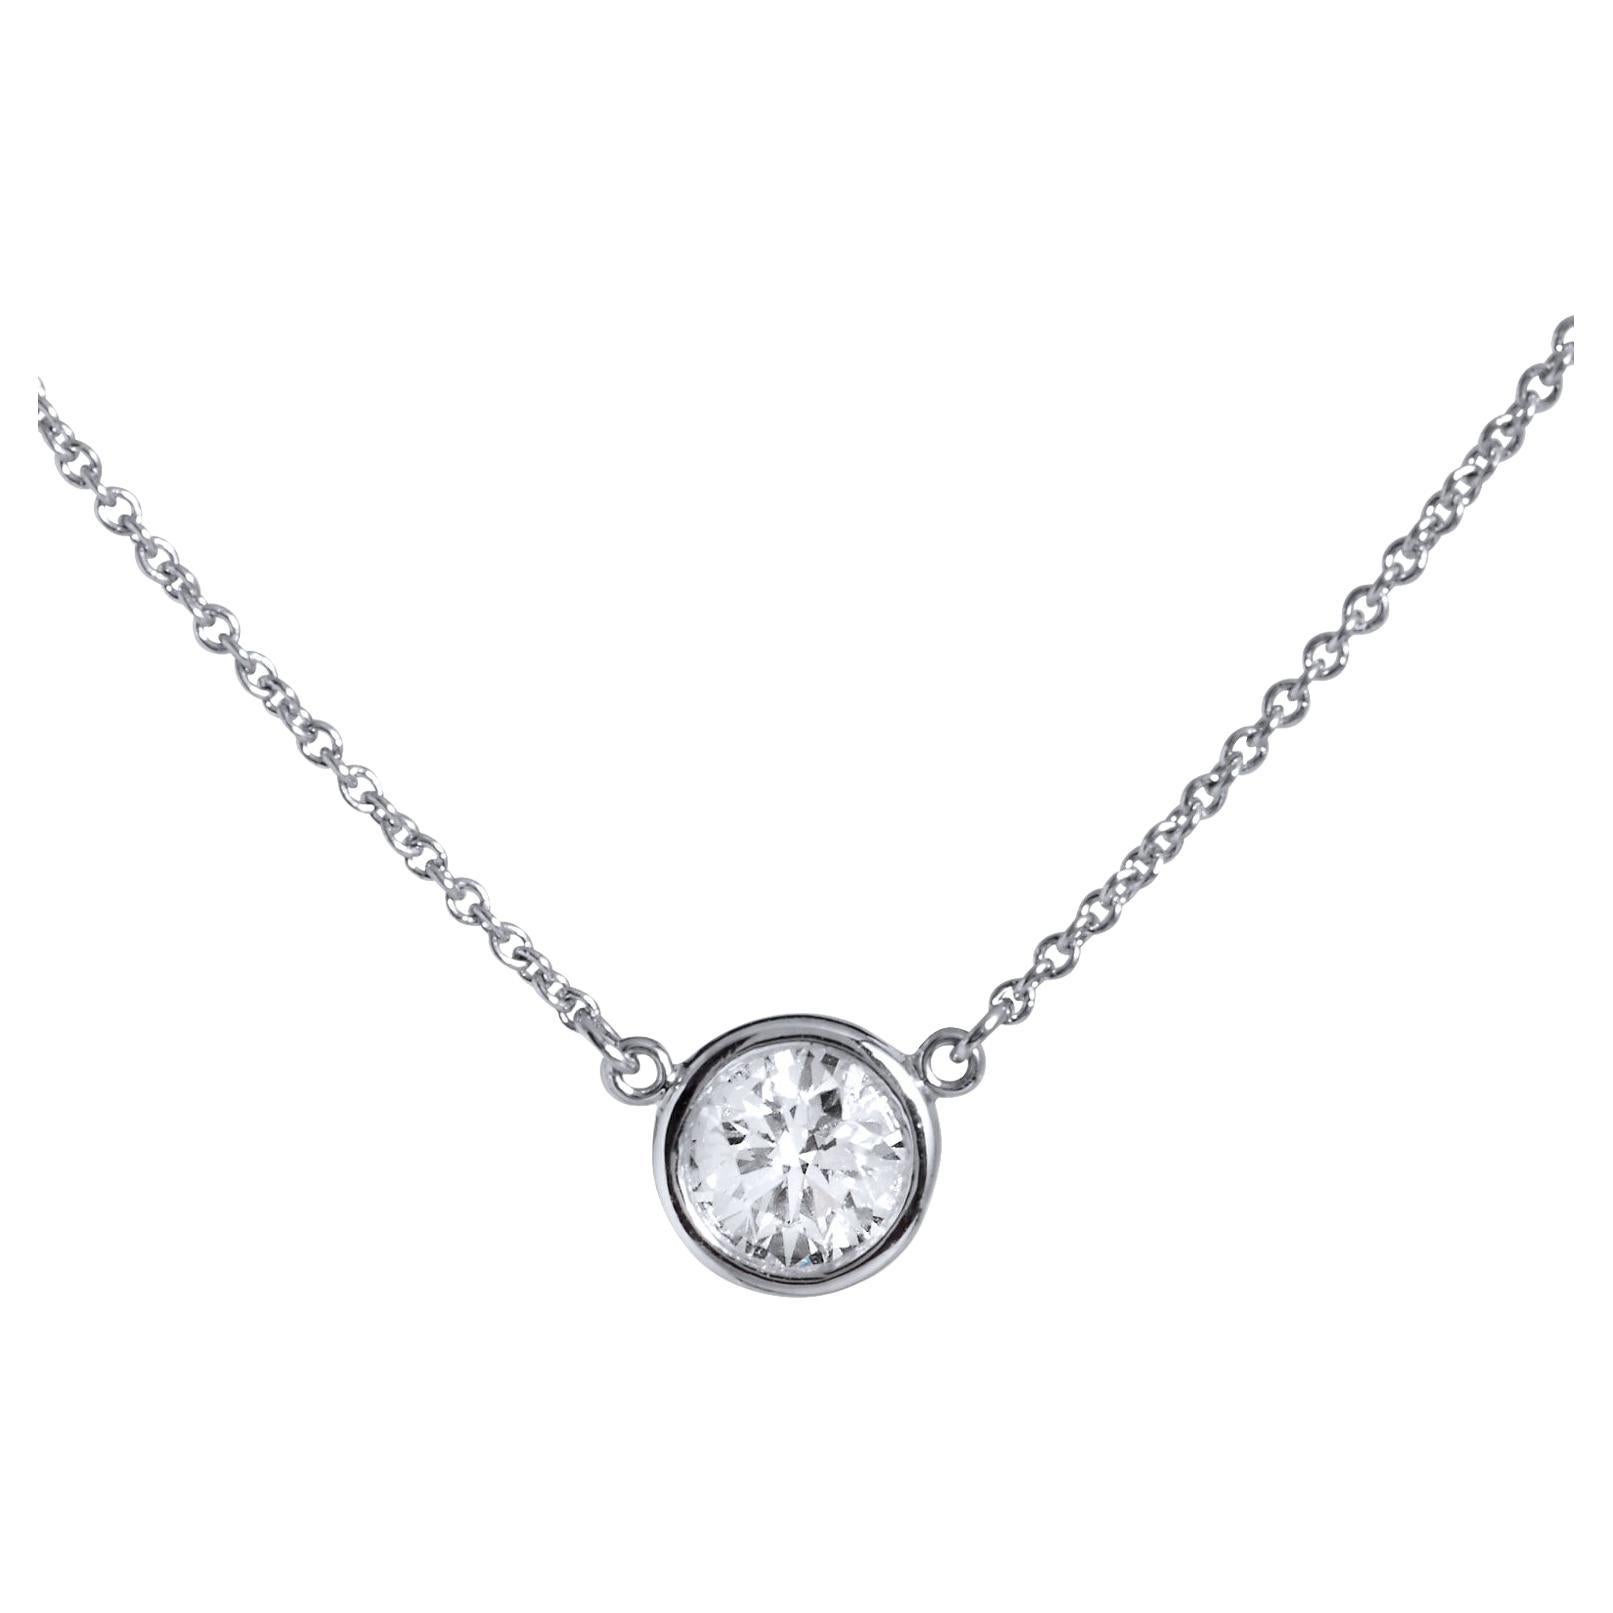 Tiffany & Co. Diamond Pendant Necklace by Elsa Peretti